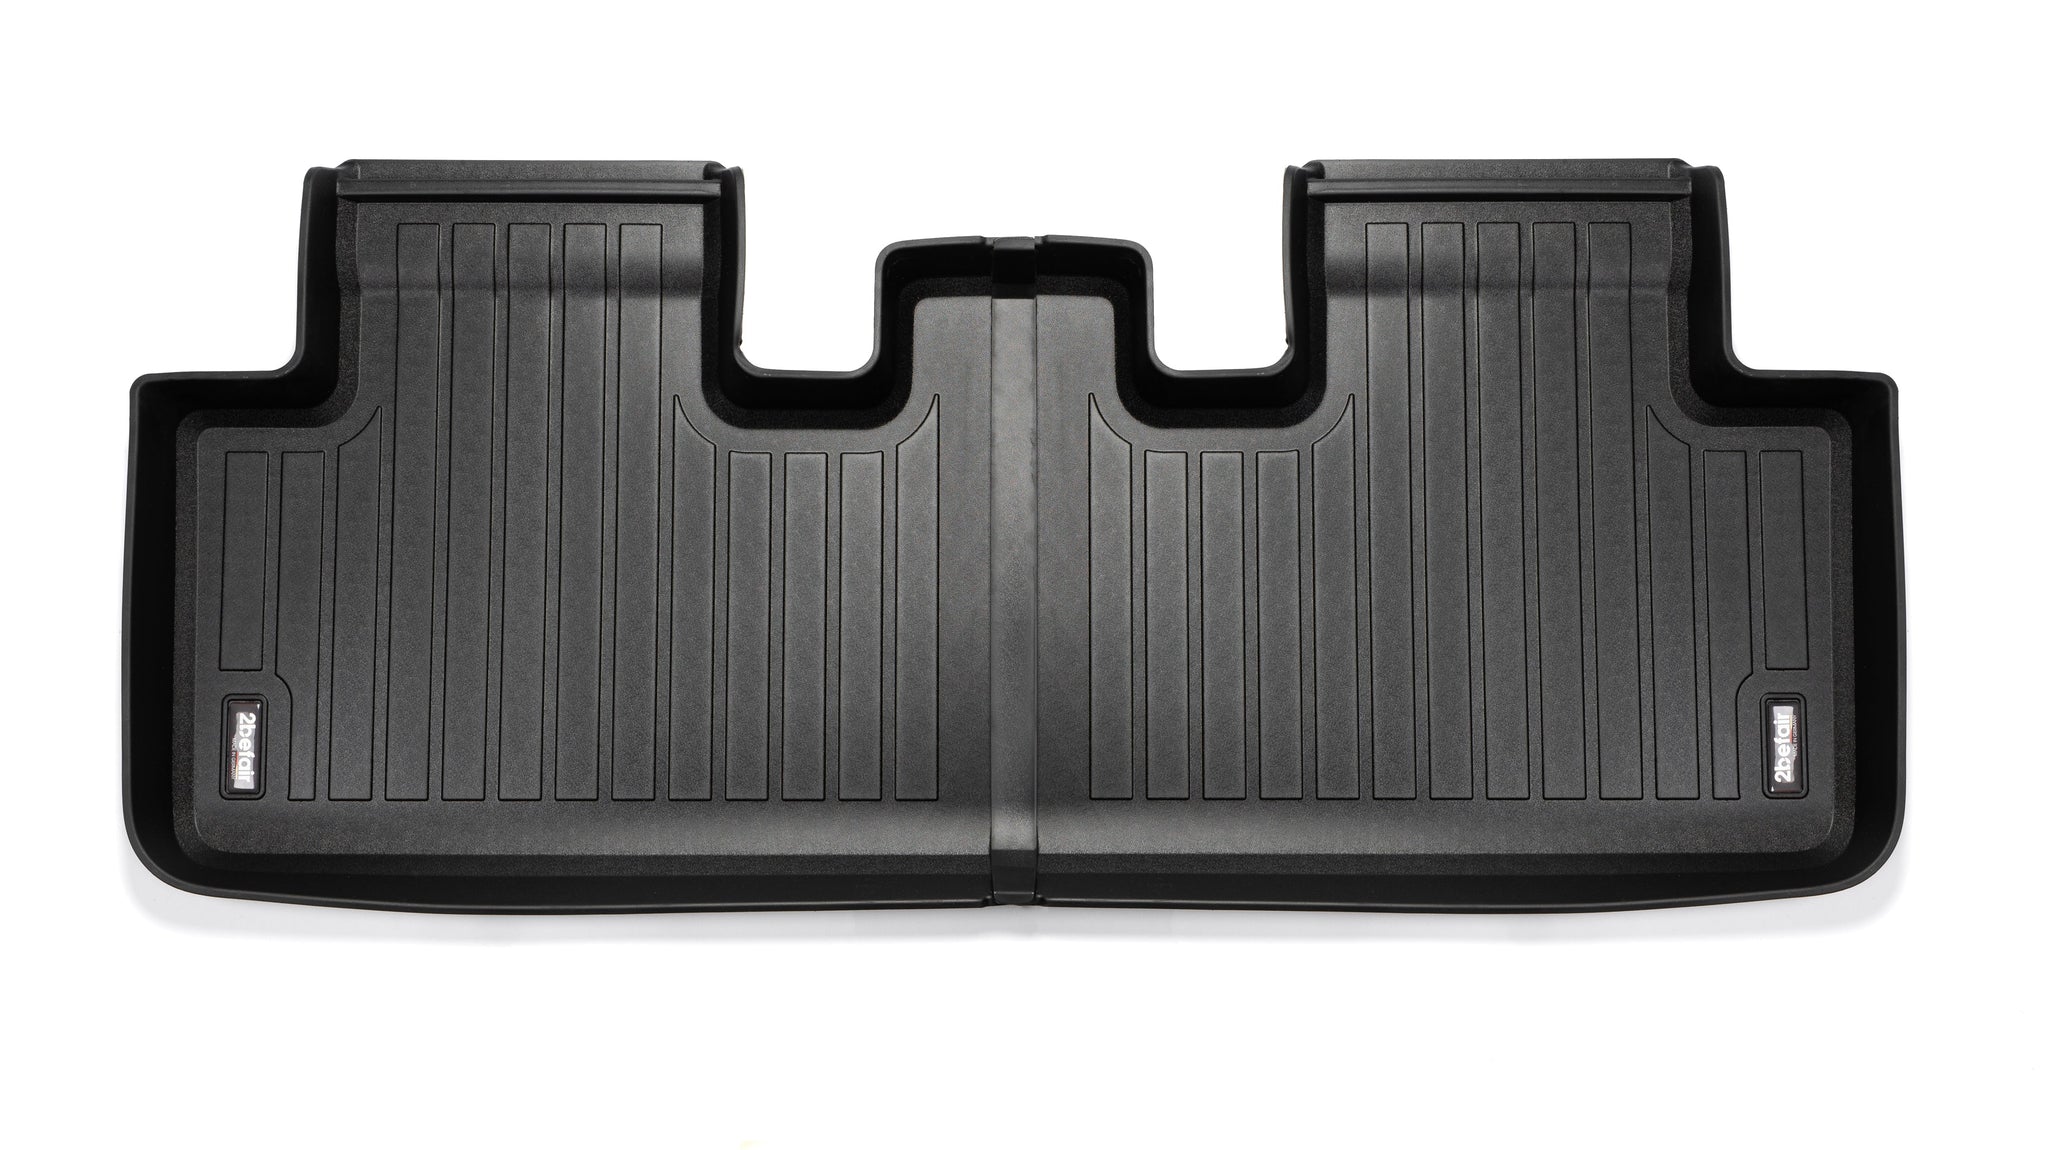 2befair rubber mats Total set for the Tesla Model Y